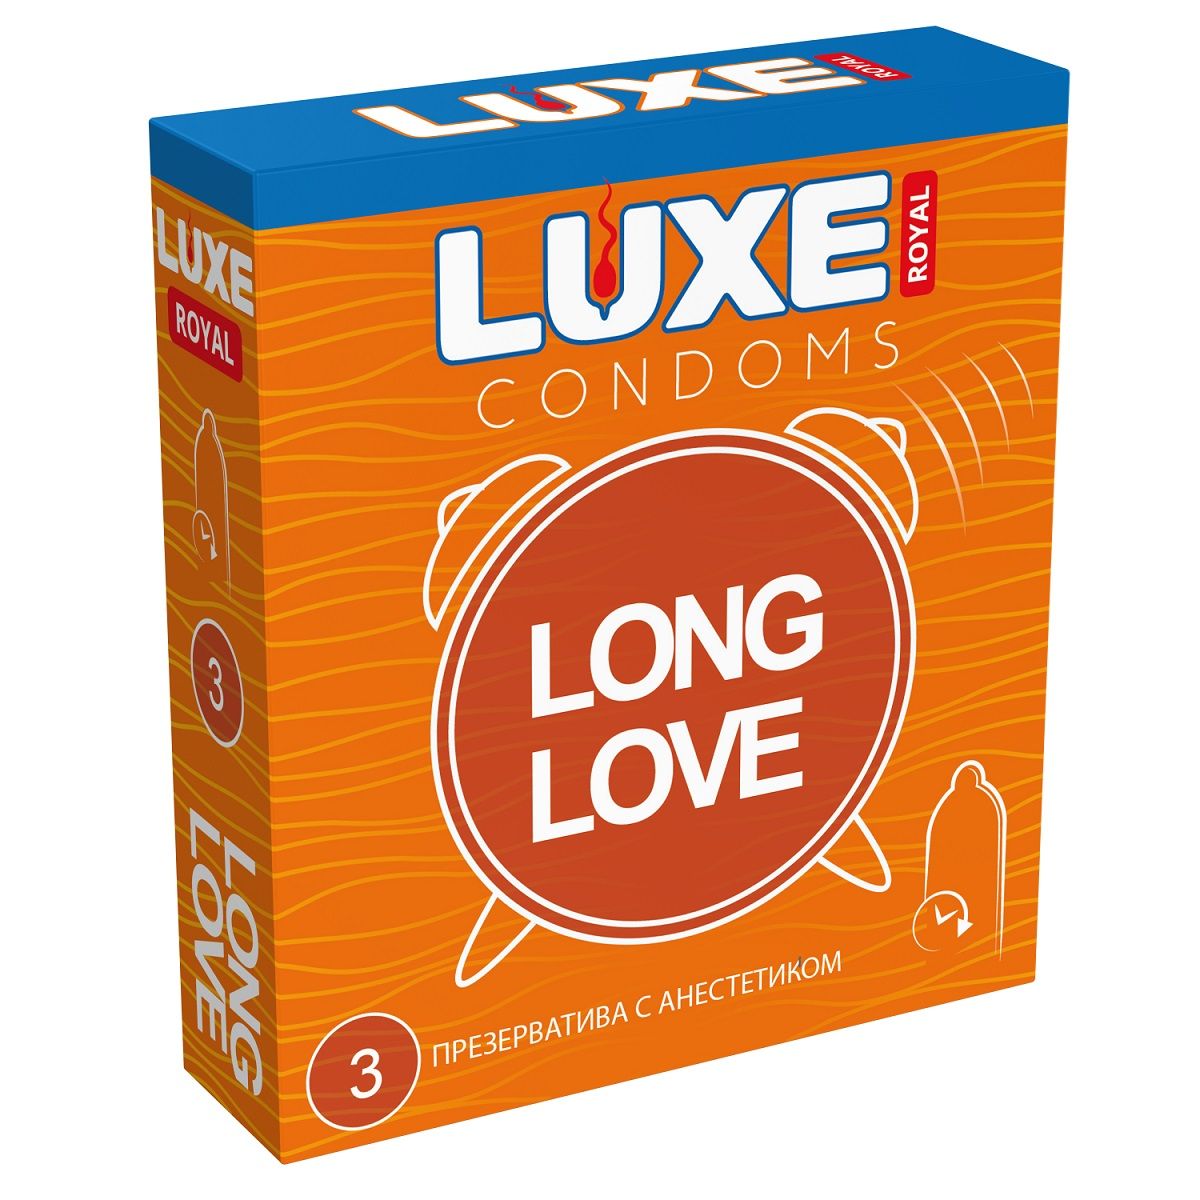 Лонг лов. Презики Люкс Роял. Текстурированные презервативы Luxe Royal Exotica - 3 шт. Luxe Royal condoms.